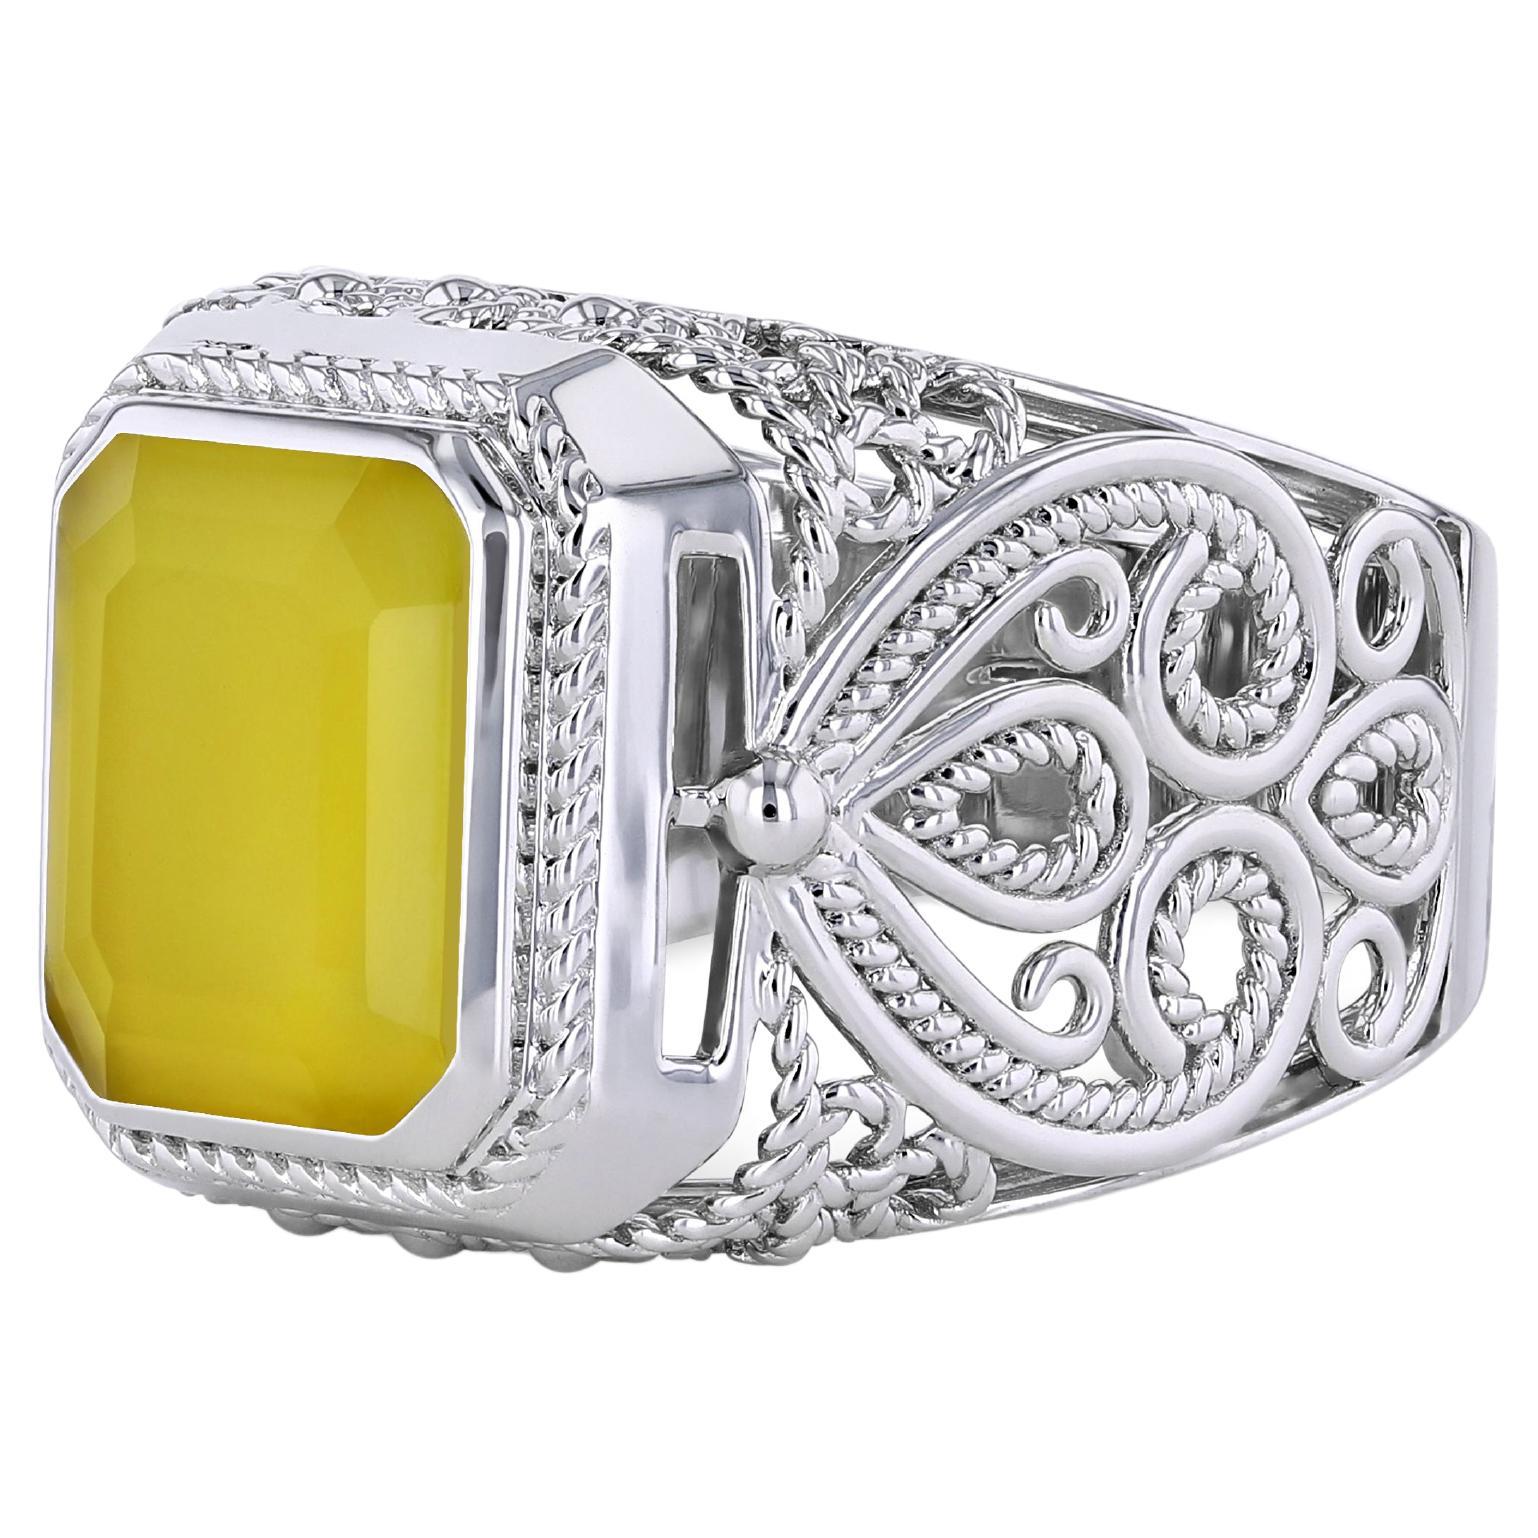 Toktam 18k White Gold Men's Rings Agate Signet Ring